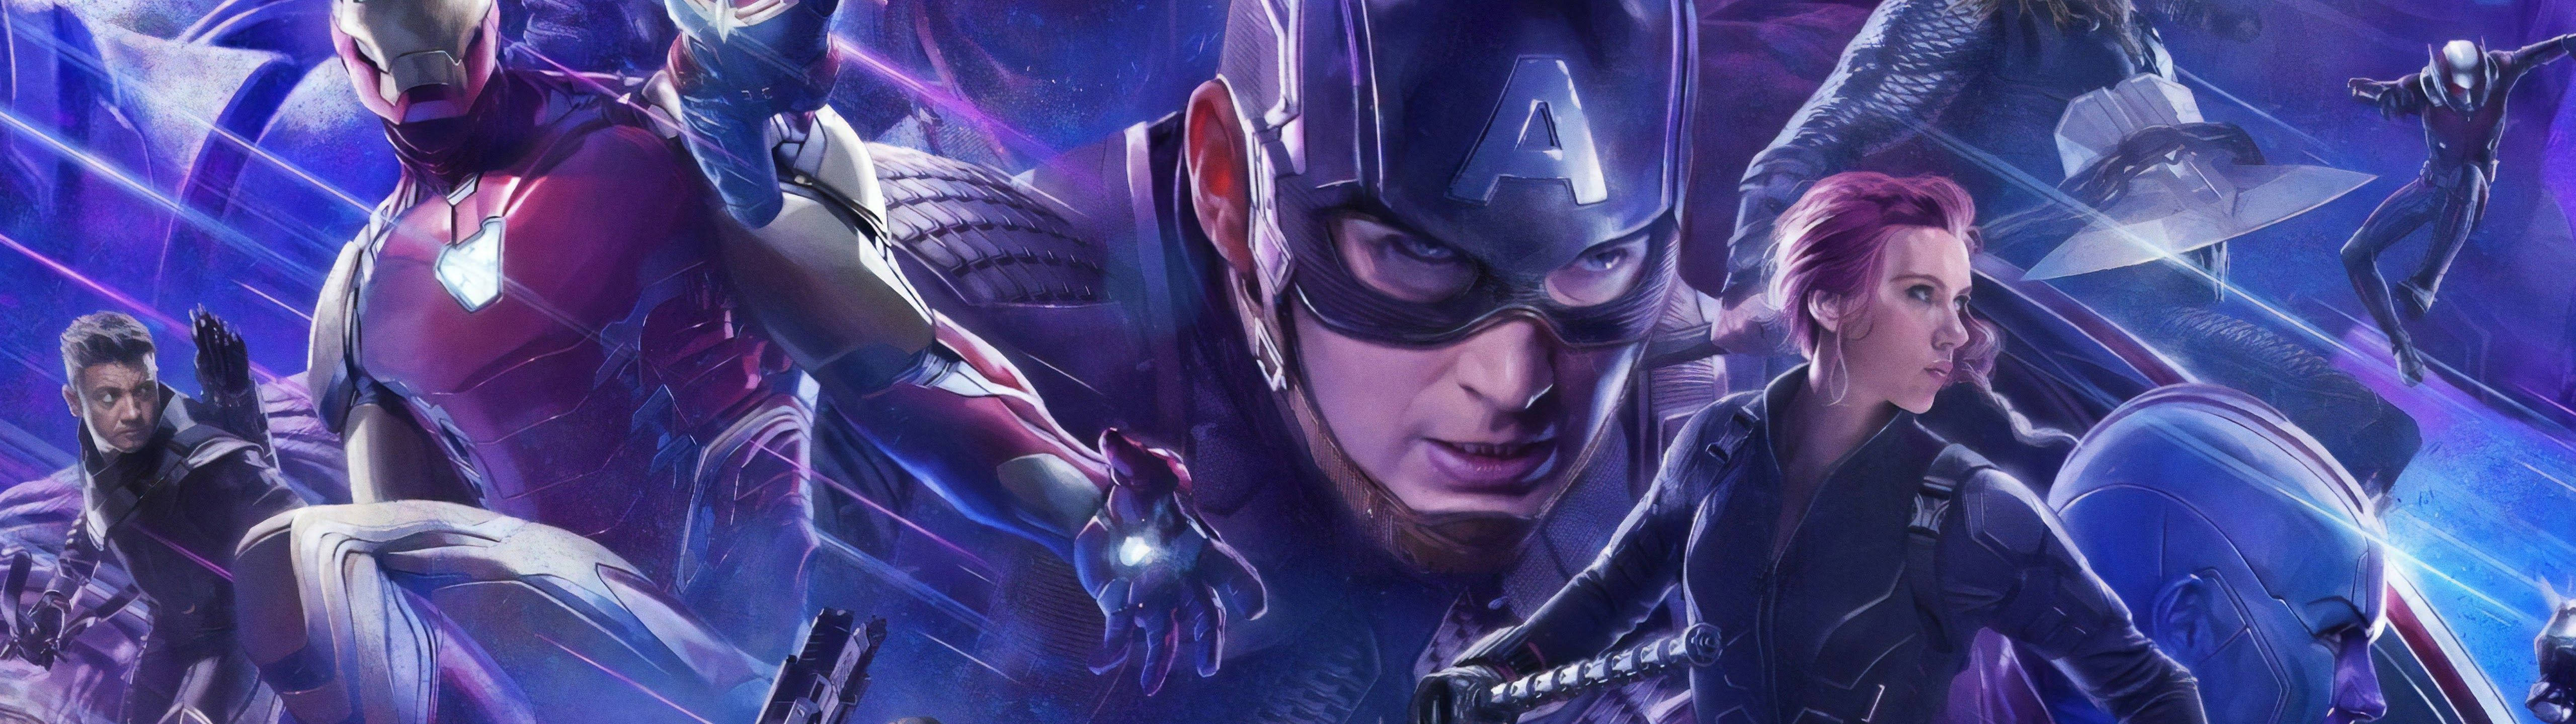 Marvel's Avengers 5120 X 1440 Background